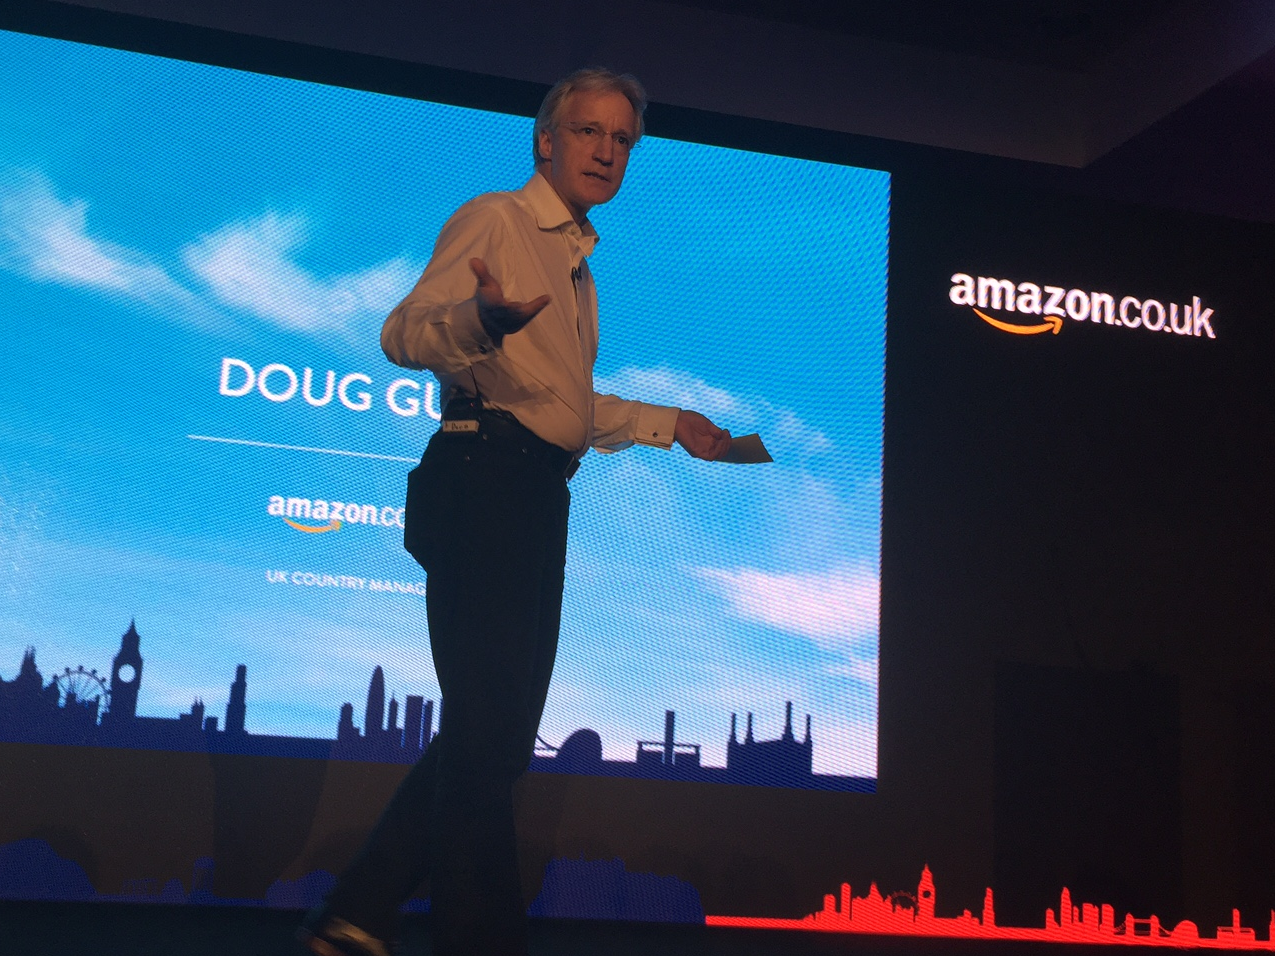 Amazon UK country manager Doug Gurr